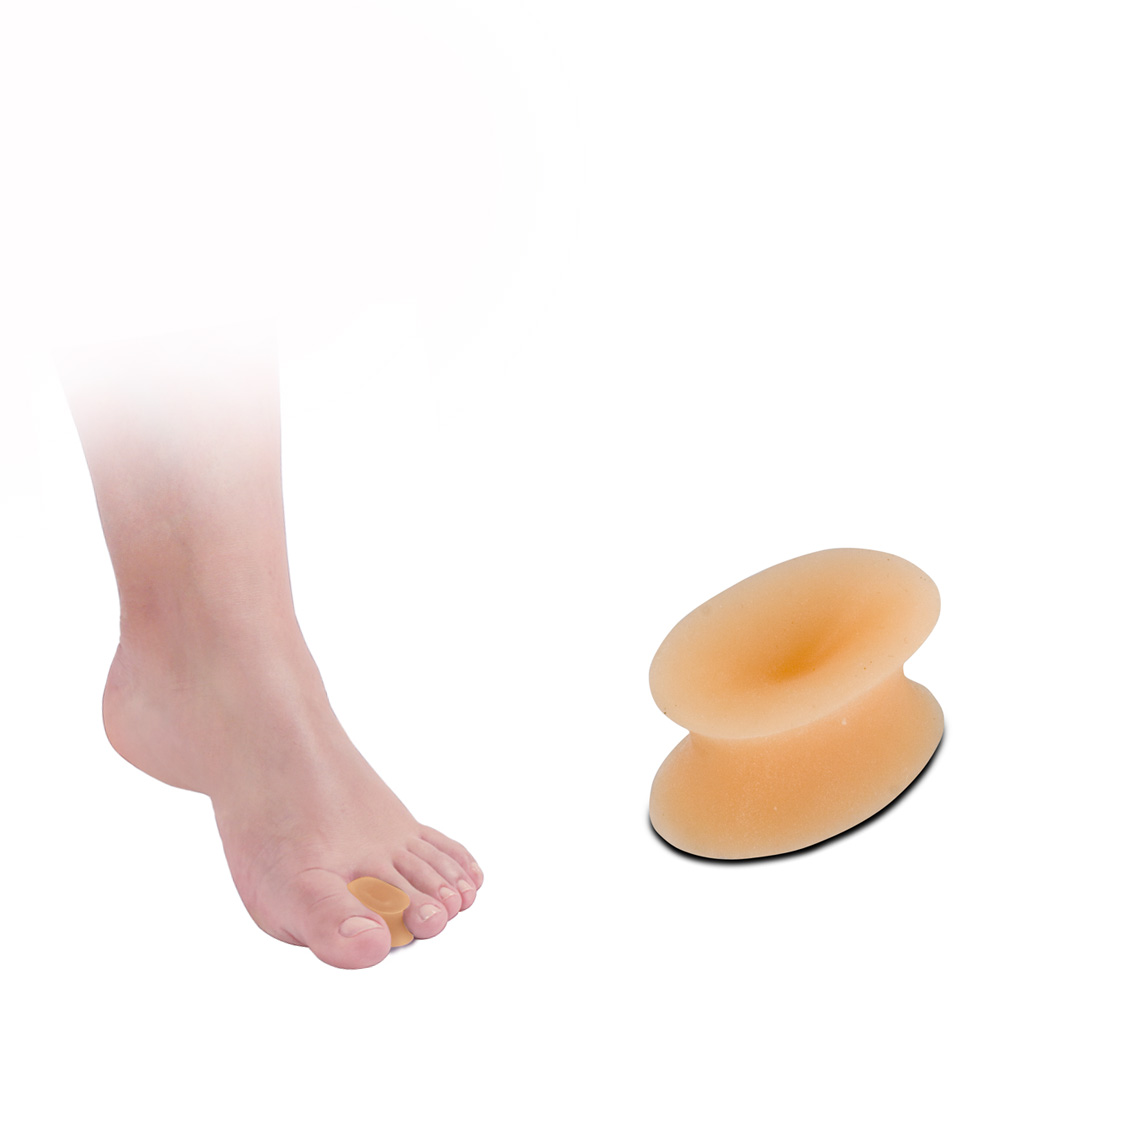 Toe spreader skin